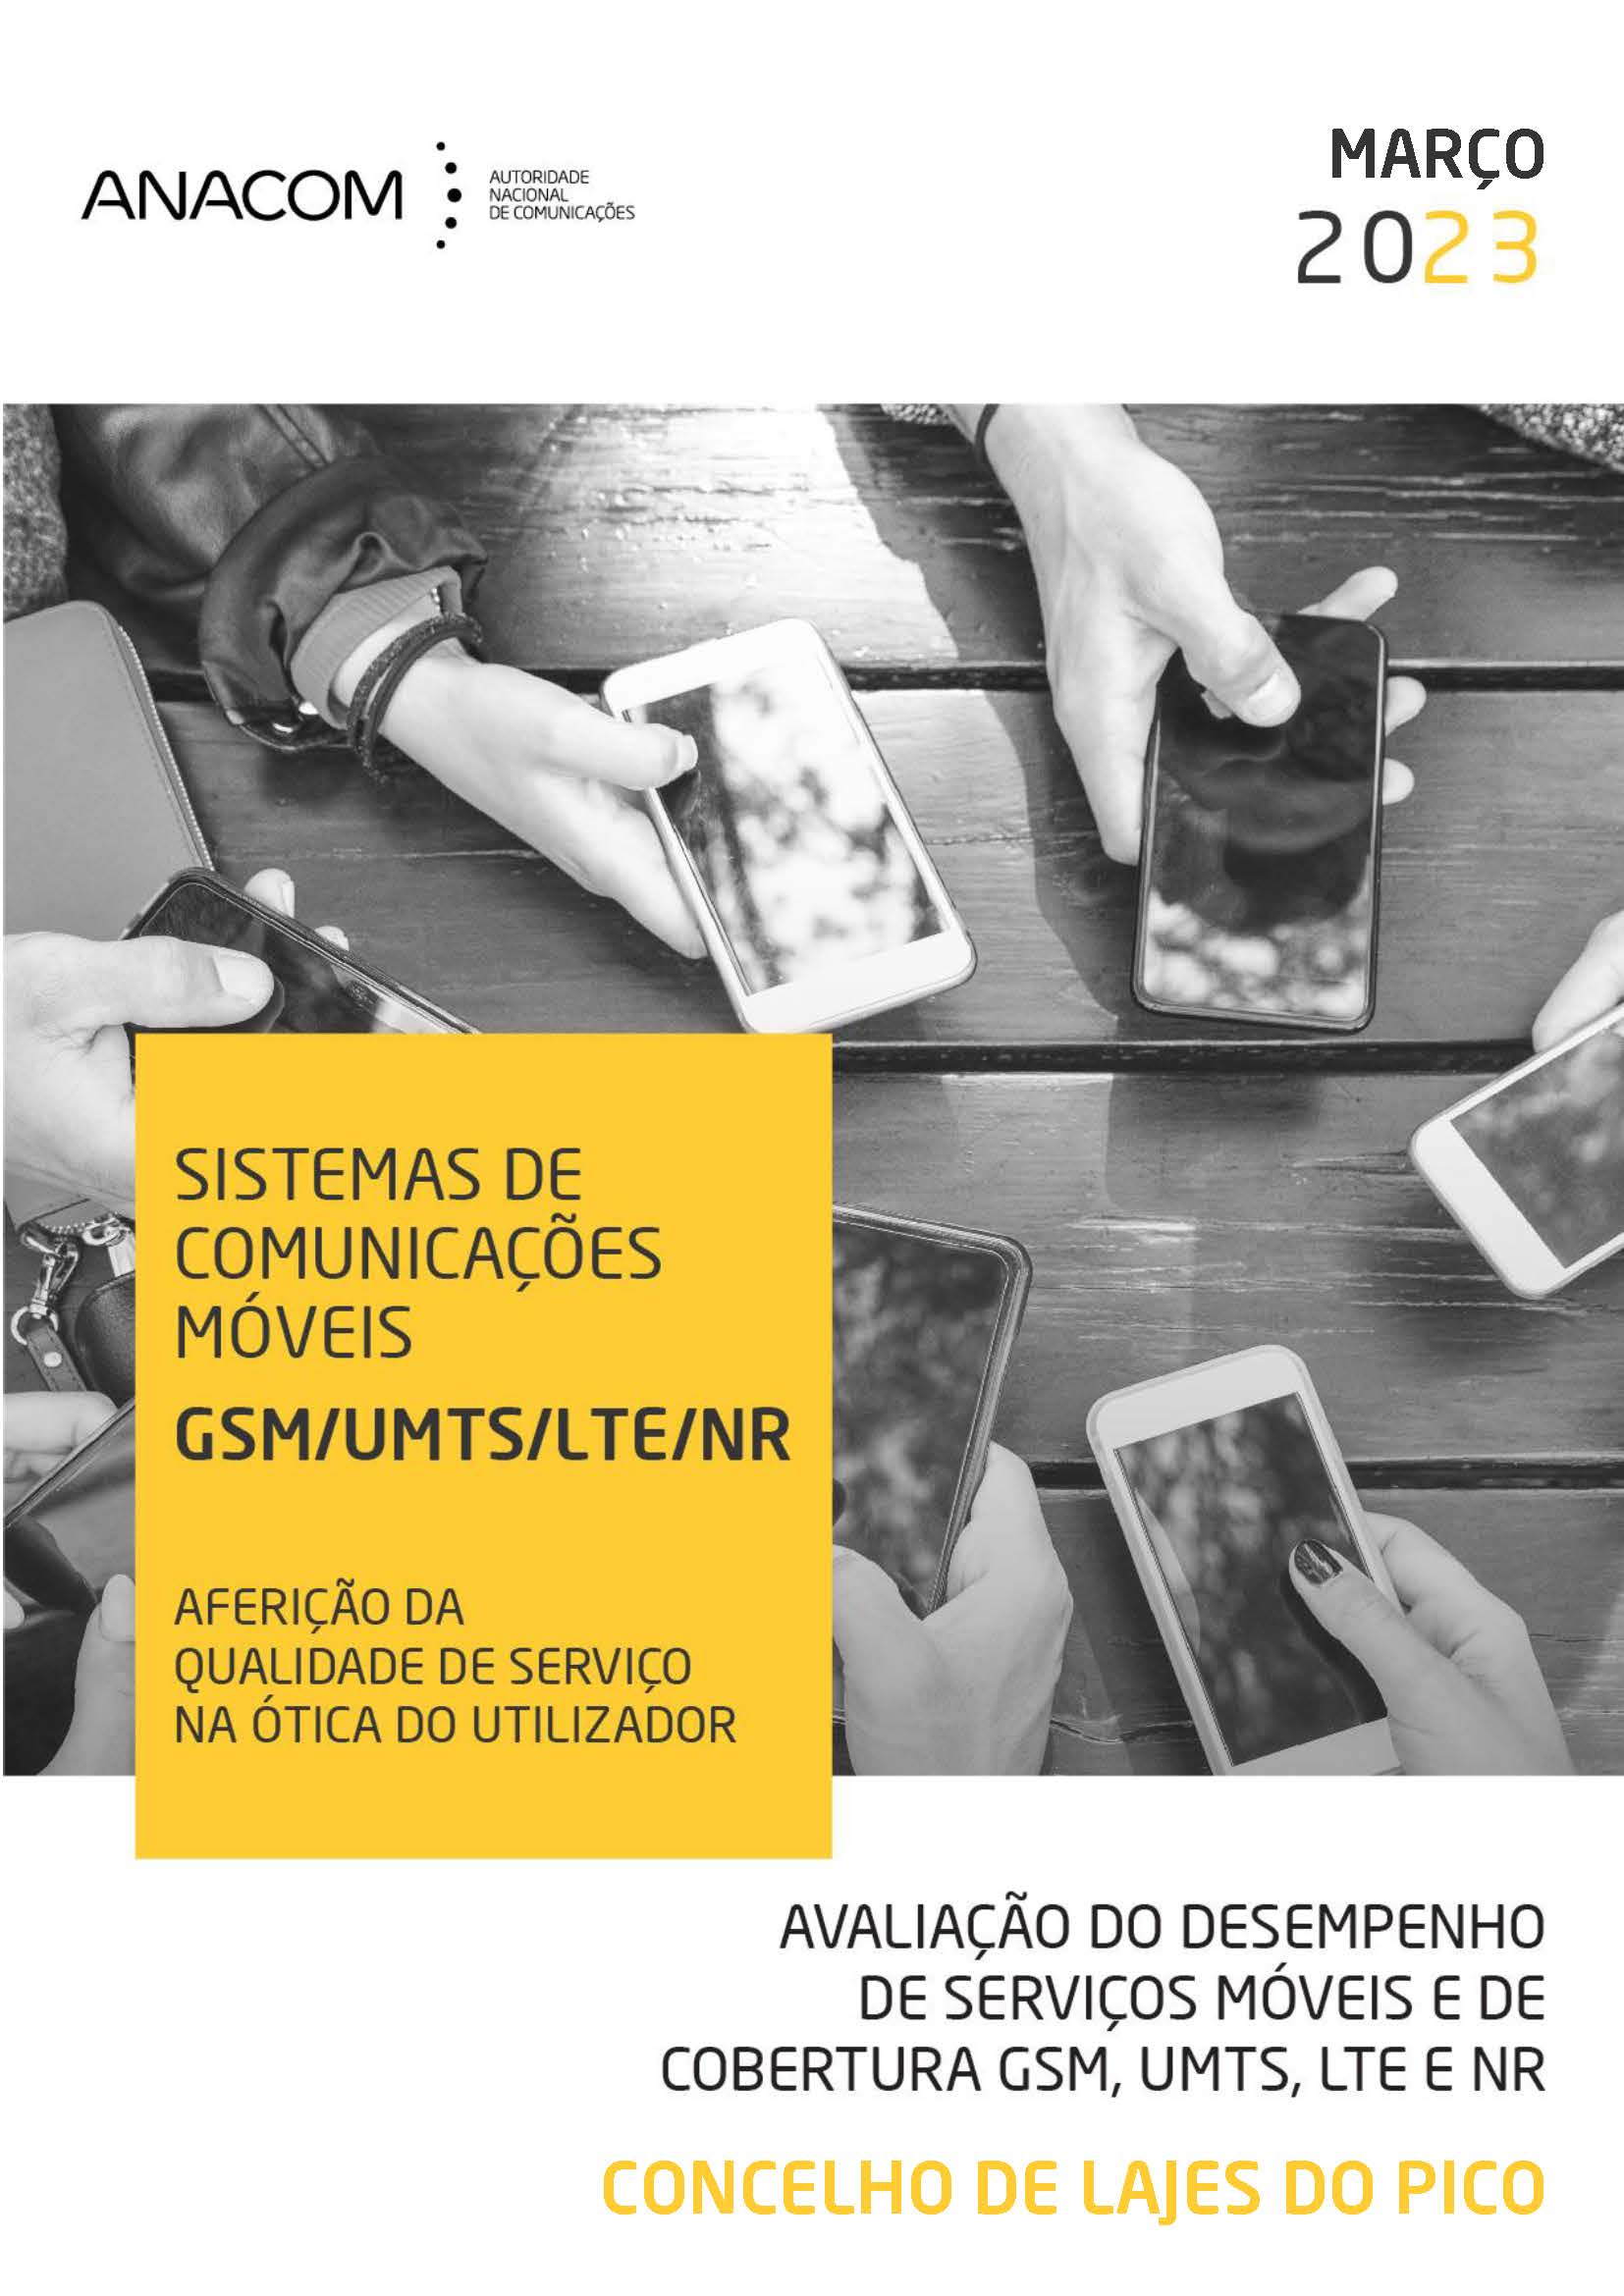 Avaliação do desempenho de serviços móveis e de cobertura GSM, UMTS, LTE e NR no Concelho de Lajes do Pico (Açores)